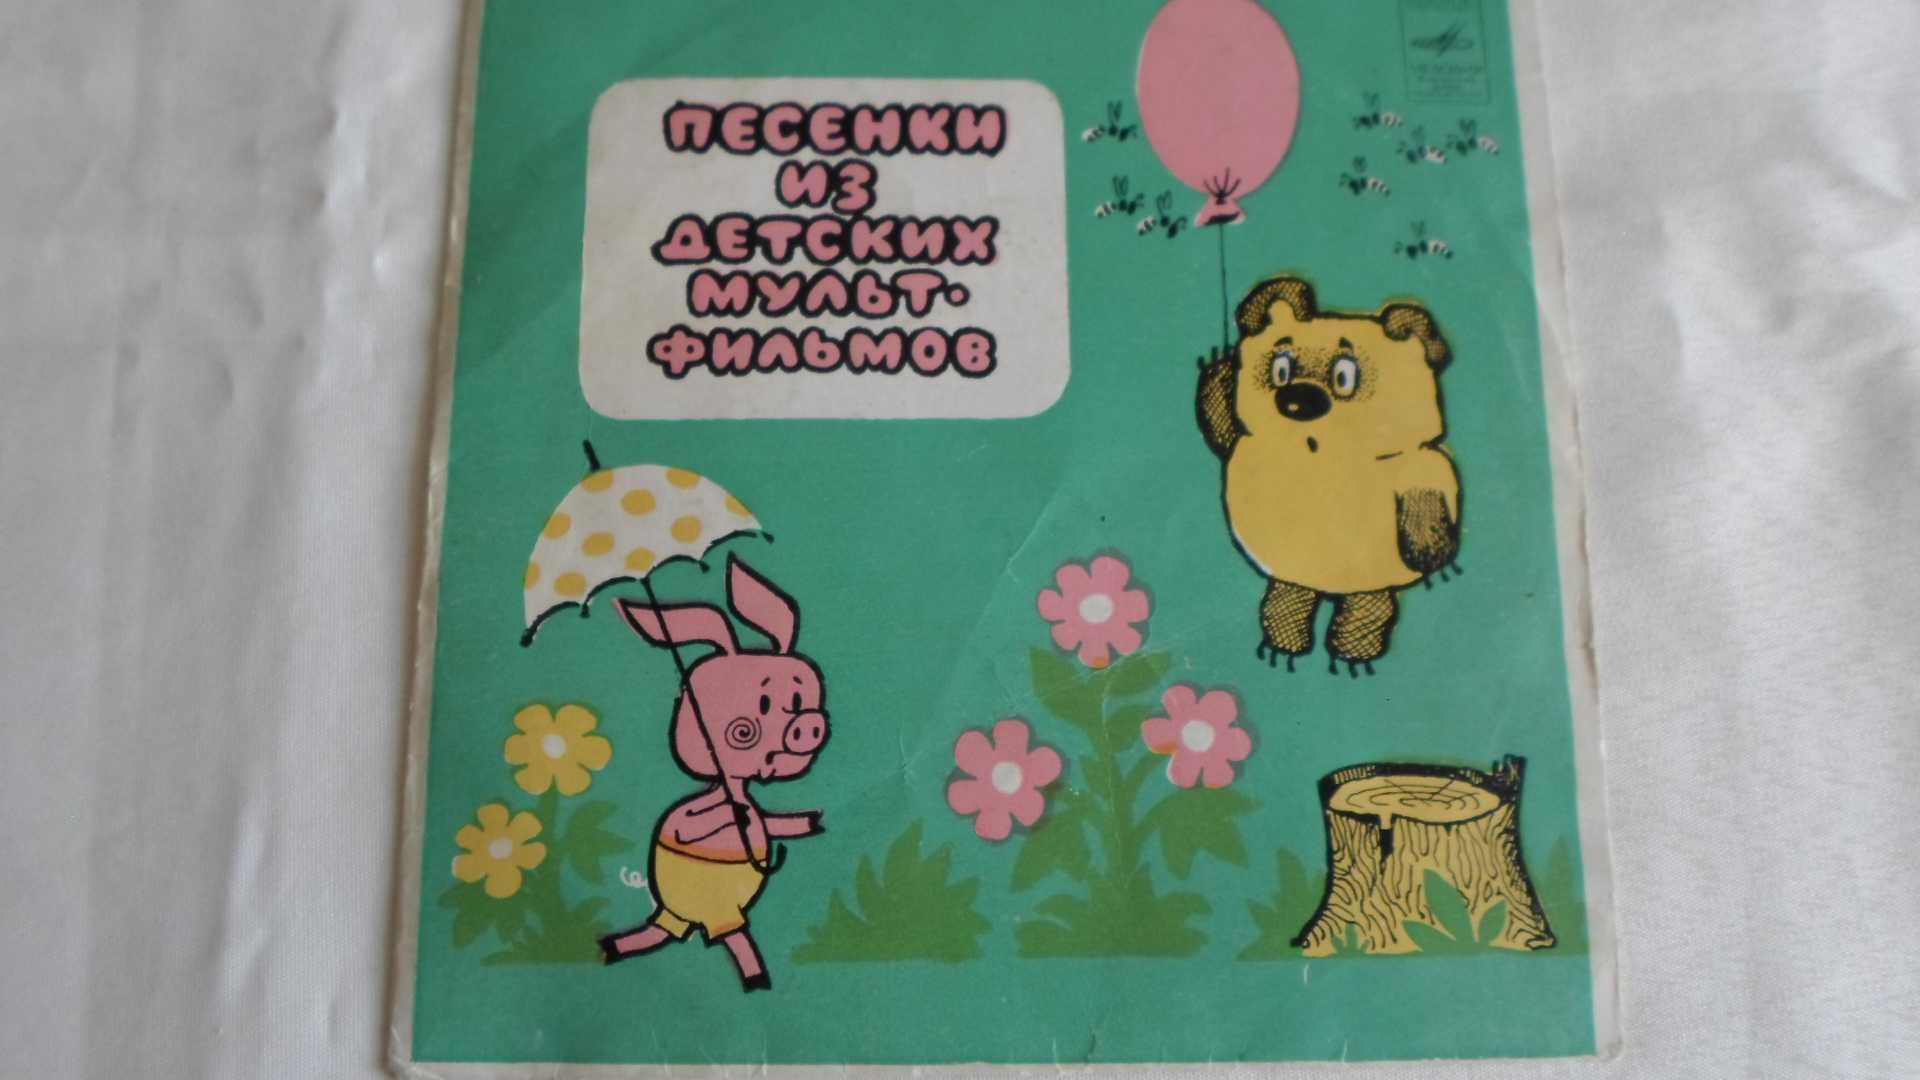 Пластинка "Песенки из детских мультфильмов"